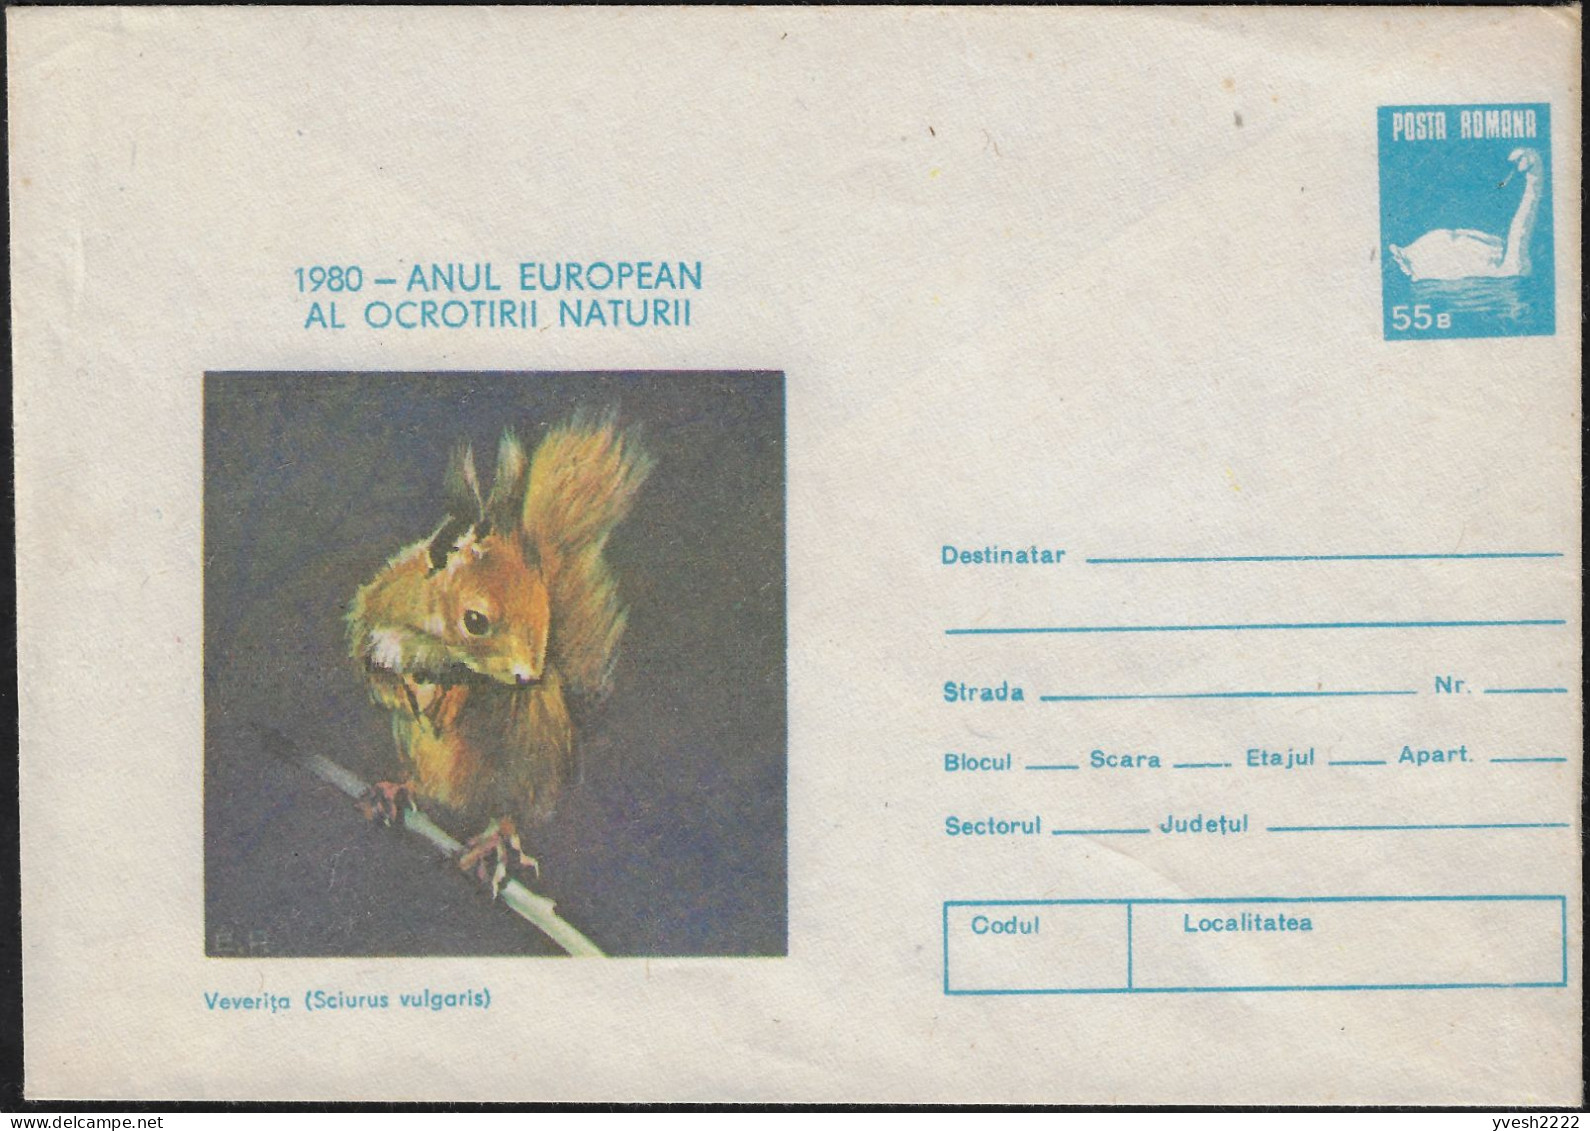 Roumanie 1980. Entier Postal, Année Européenne De La Protection De La Nature. Écureuil, Cygne - Nager